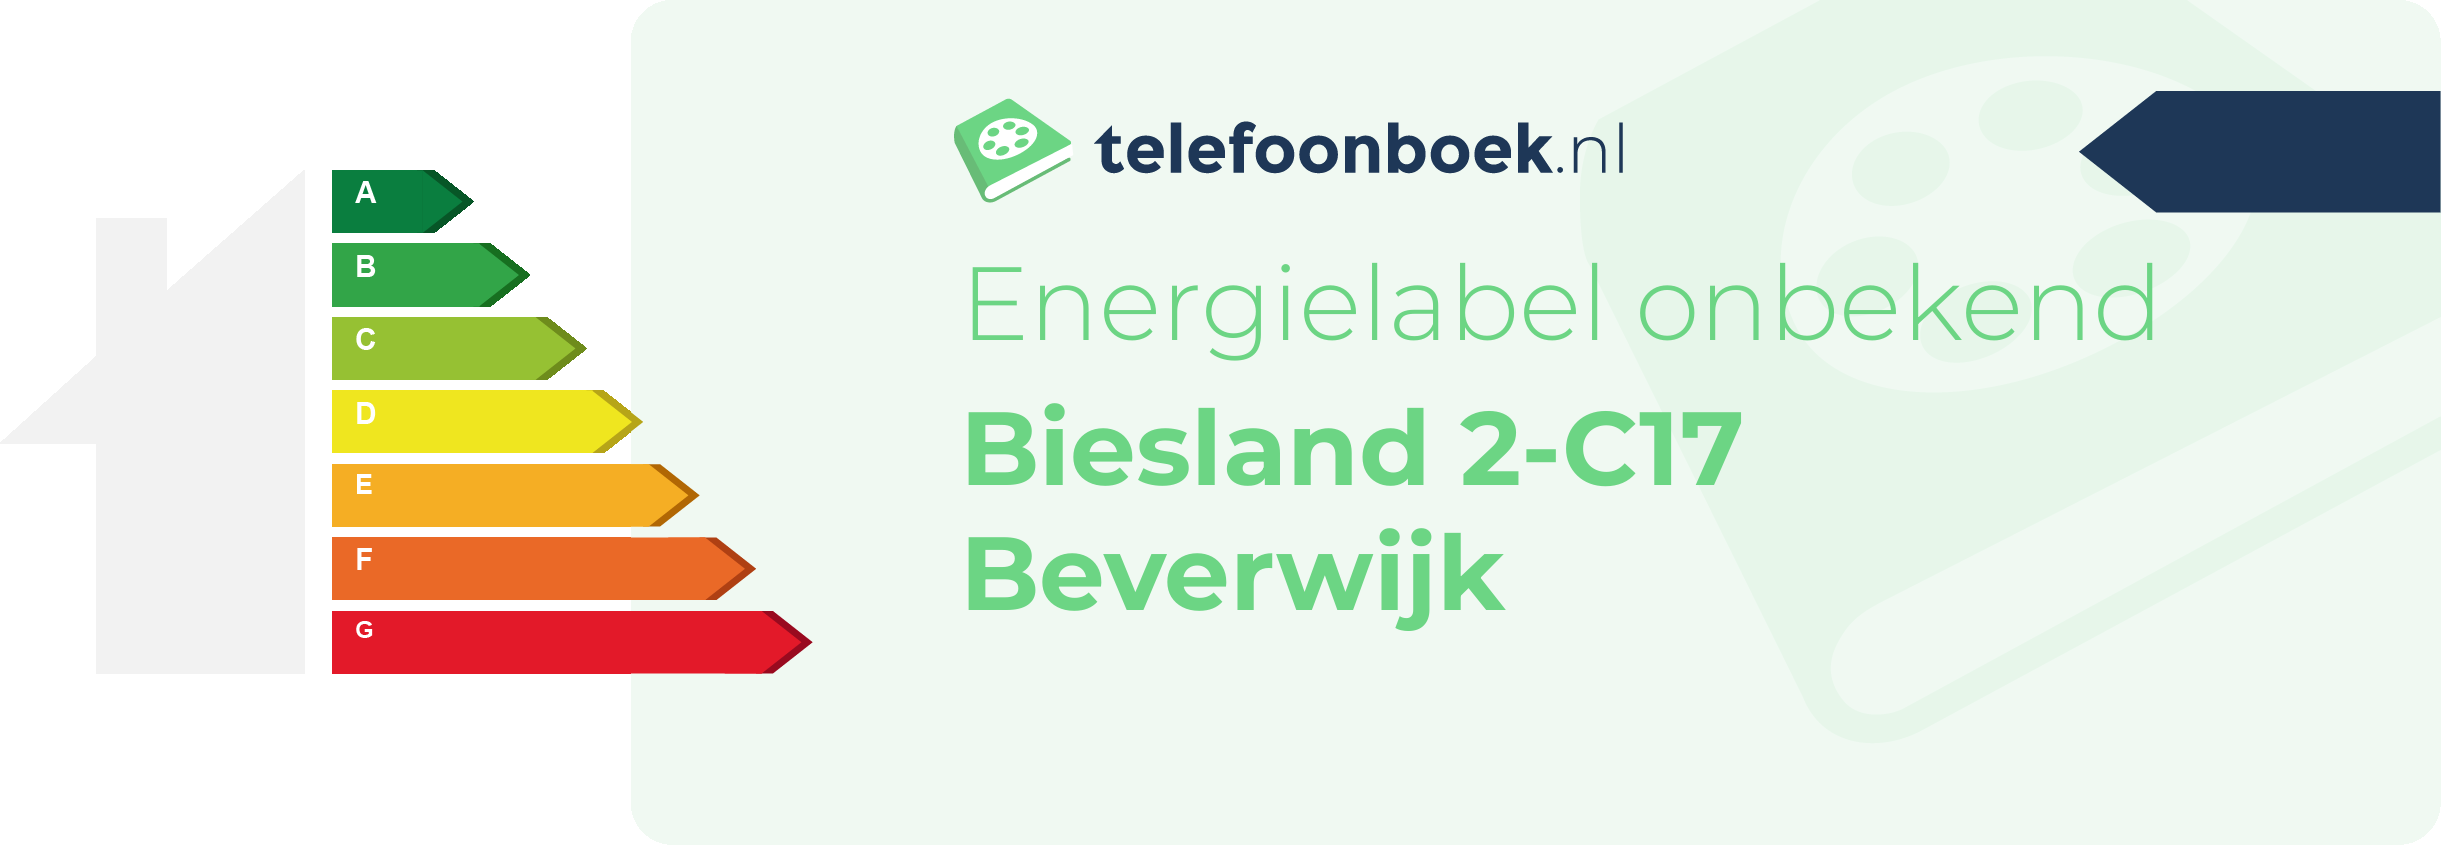 Energielabel Biesland 2-C17 Beverwijk